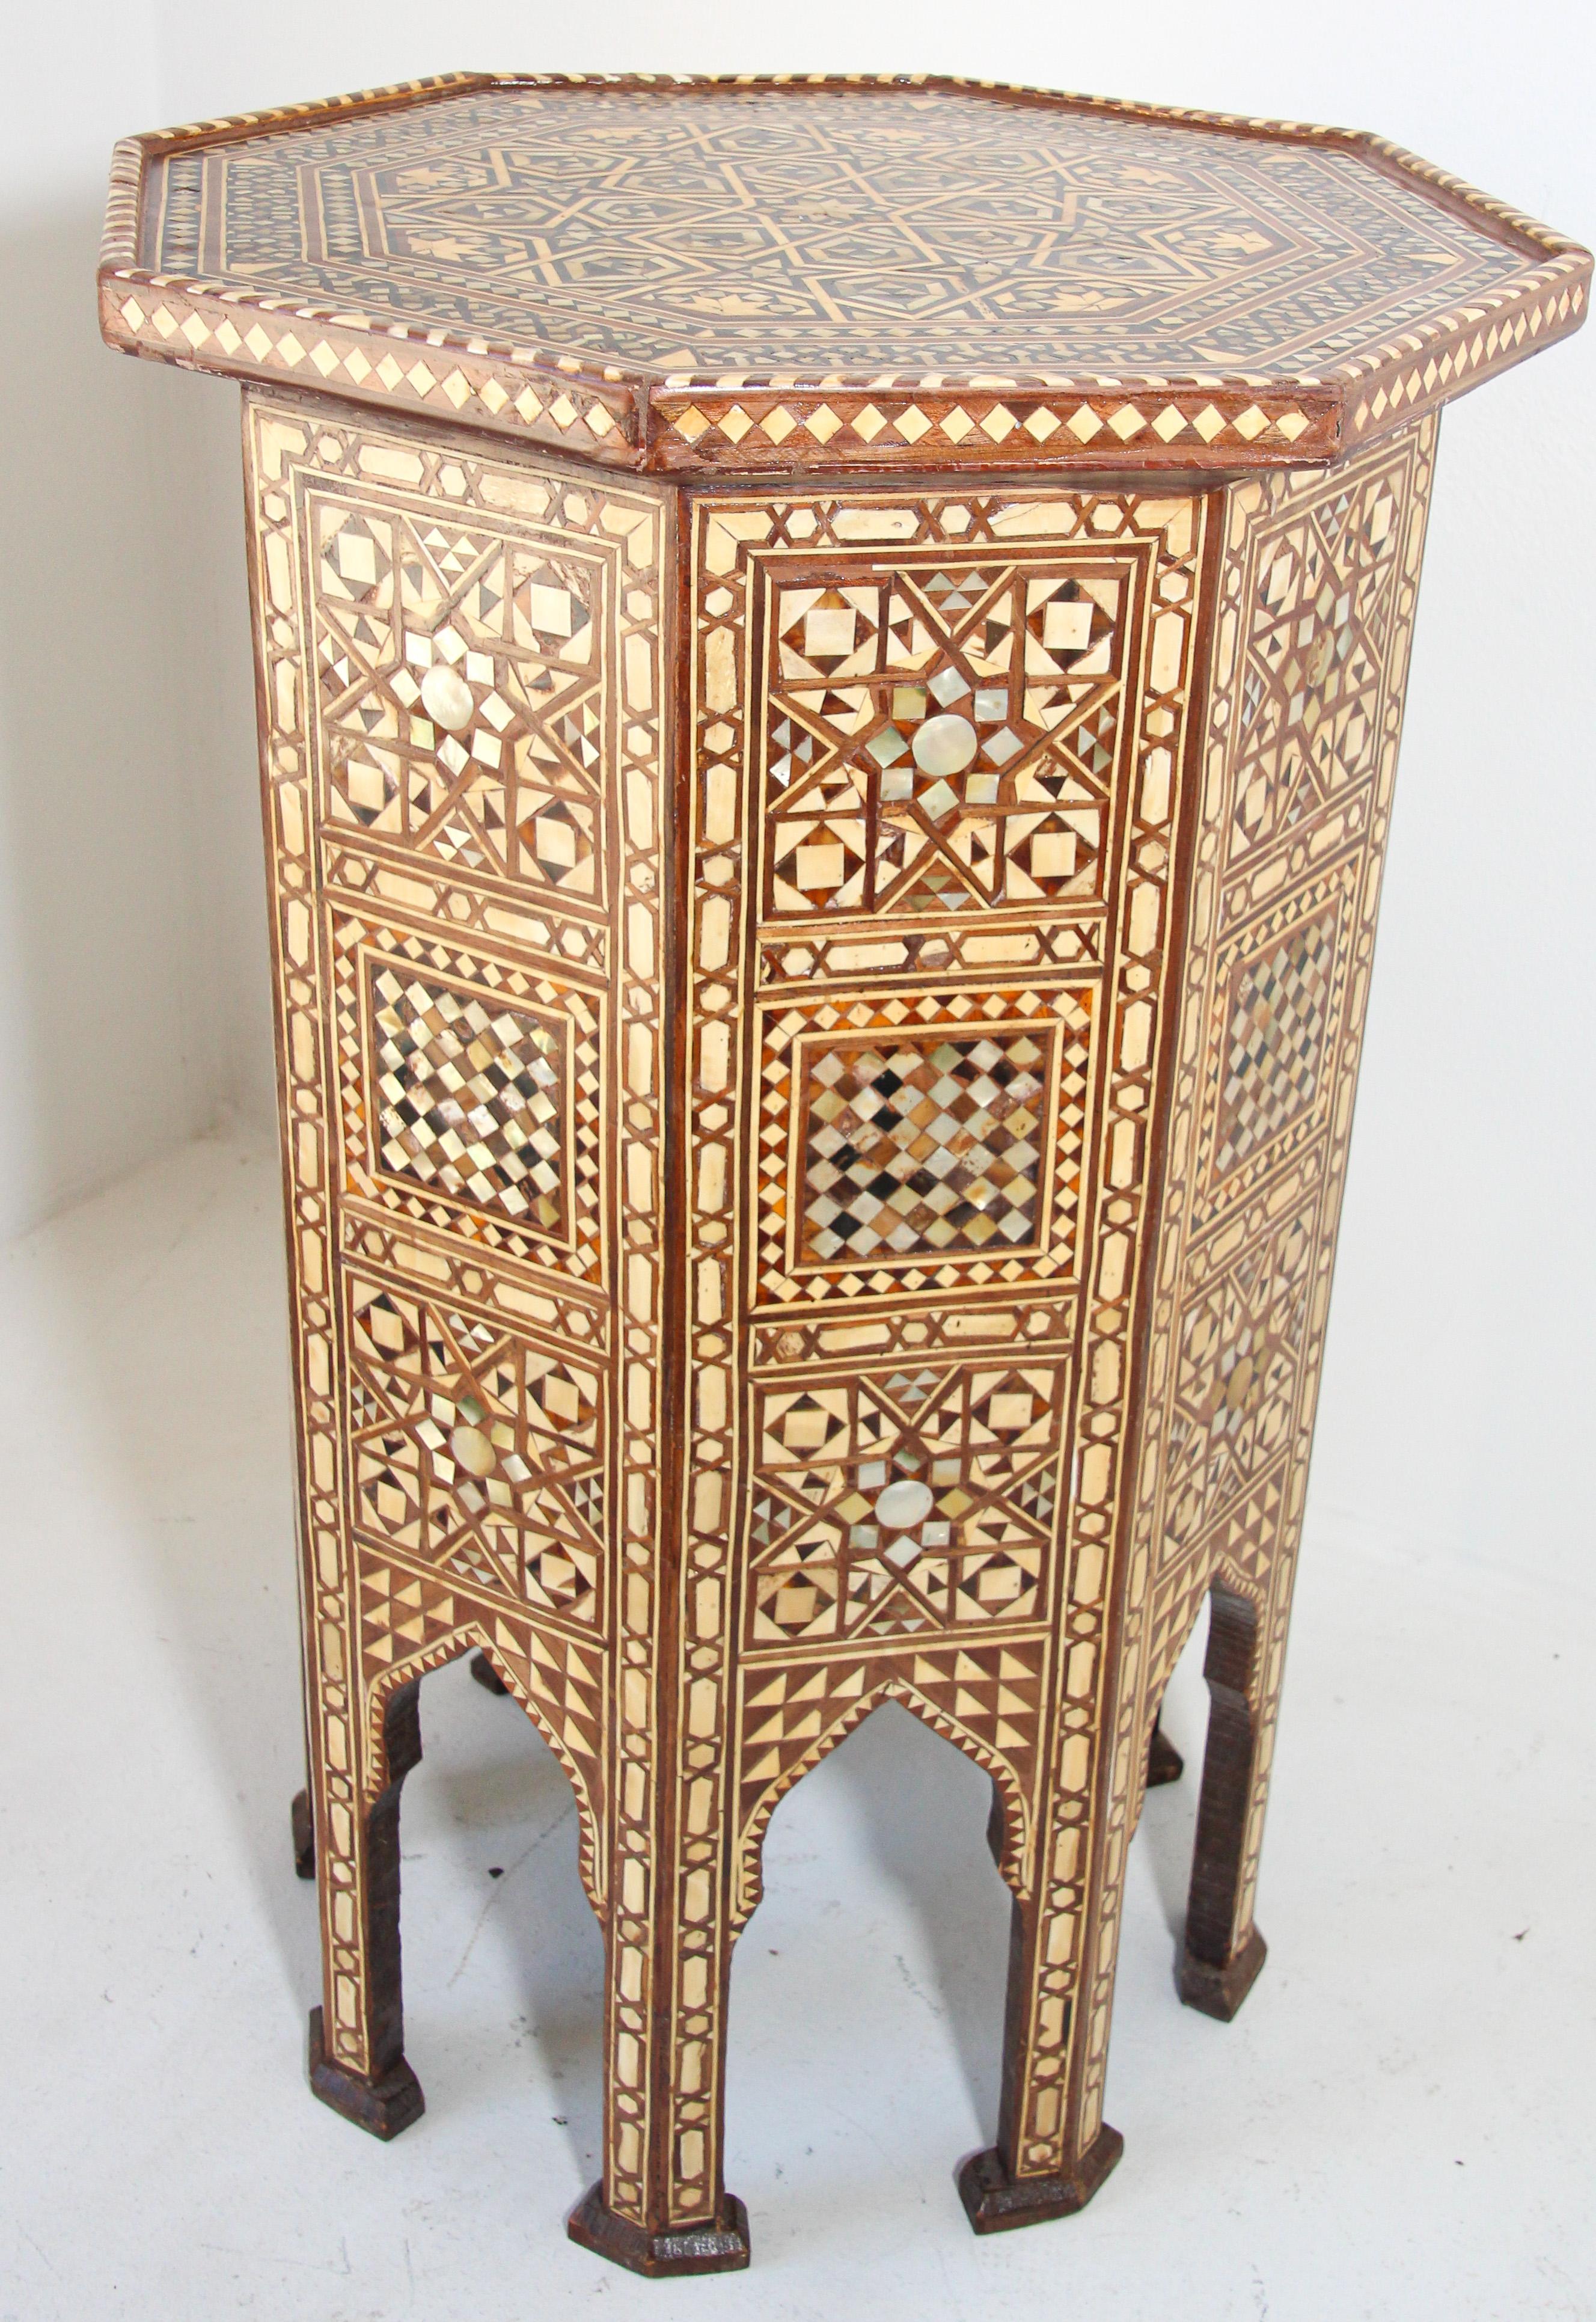 Guéridon octogonal en noyer de style mauresque marocain, incrusté de mosaïques.
Le plateau de la table est de forme octogonale, décoré de divers motifs géométriques et d'arabesques.
La table repose sur huit pieds séparés par des arcs cuspidés et